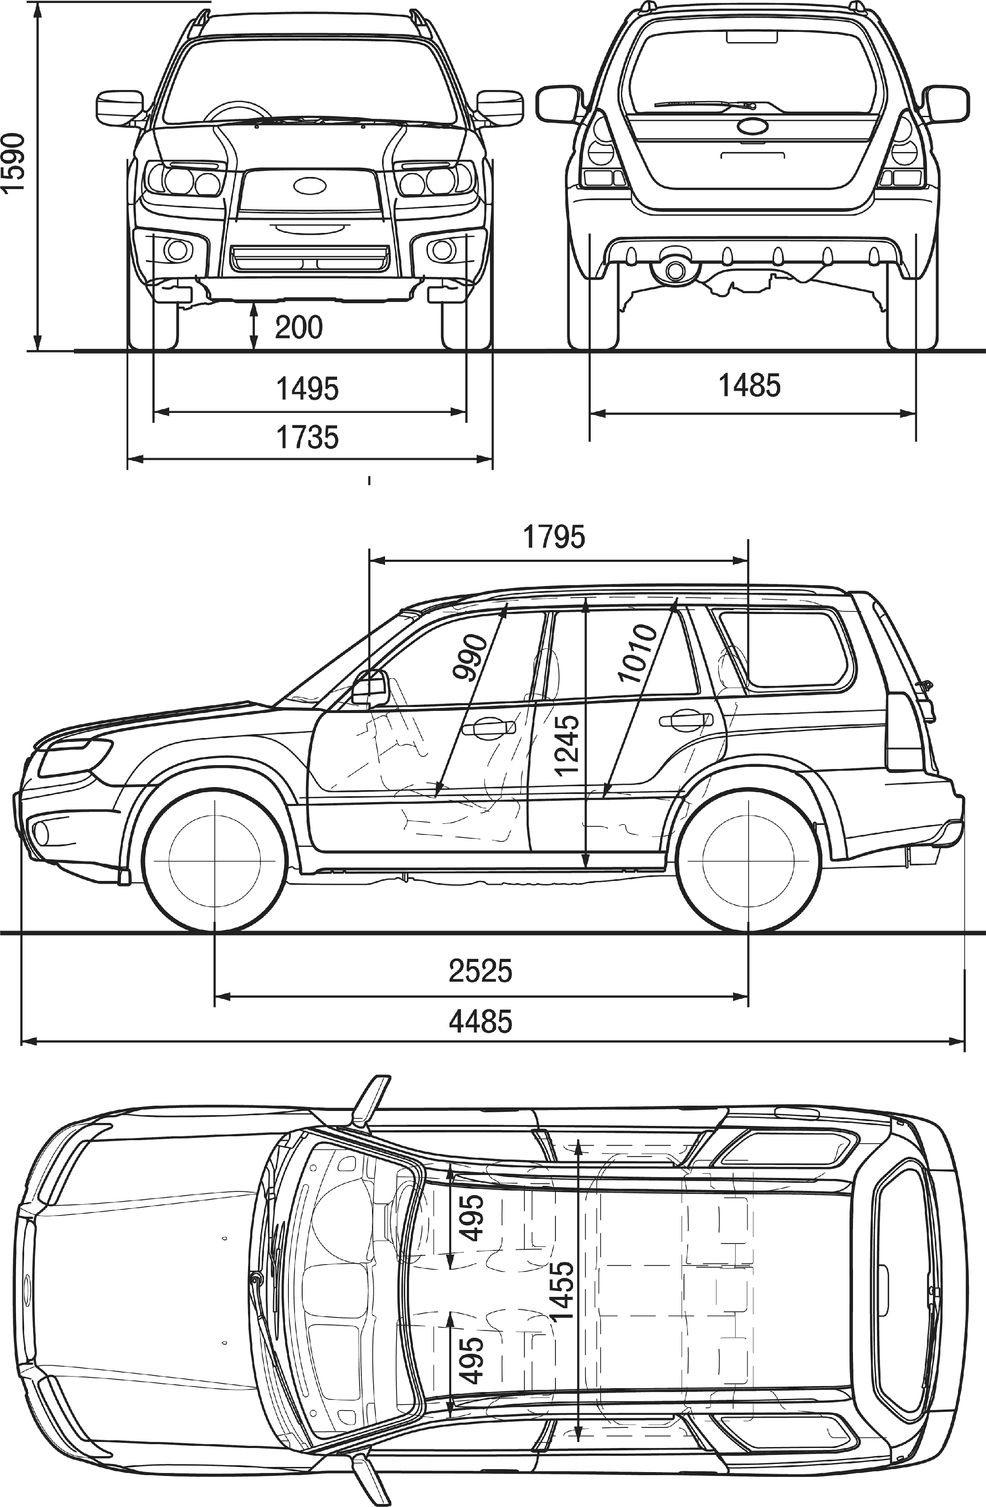 Габаритные размеры Субару Форестер после рестайлинга 2006-2008 (dimensions Subaru Forester SG)